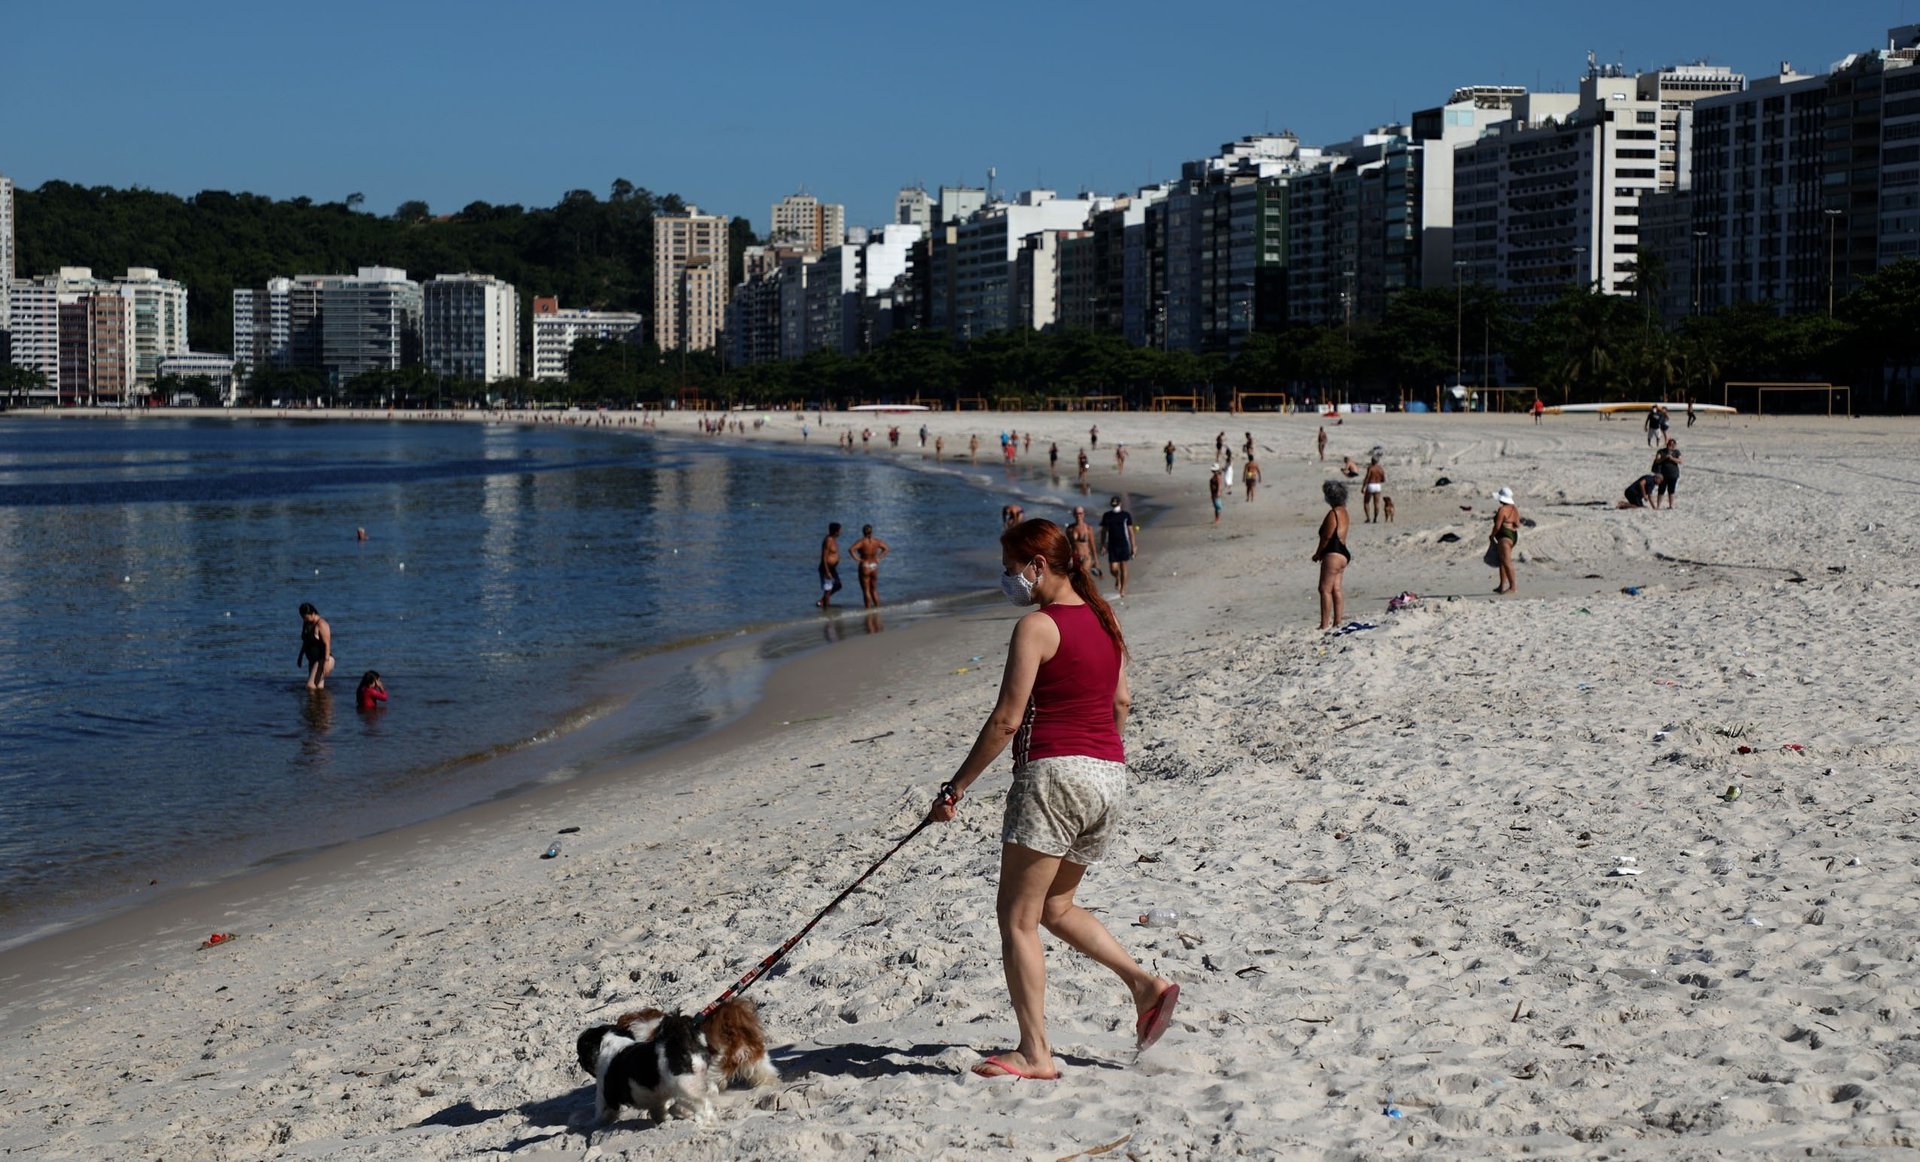 Una mujer camina en una playa en la ciudad de Niterói, vecina de Río de Janeiro hoy, jueves 31 de diciembre de 2020. EFE/Fabio Motta